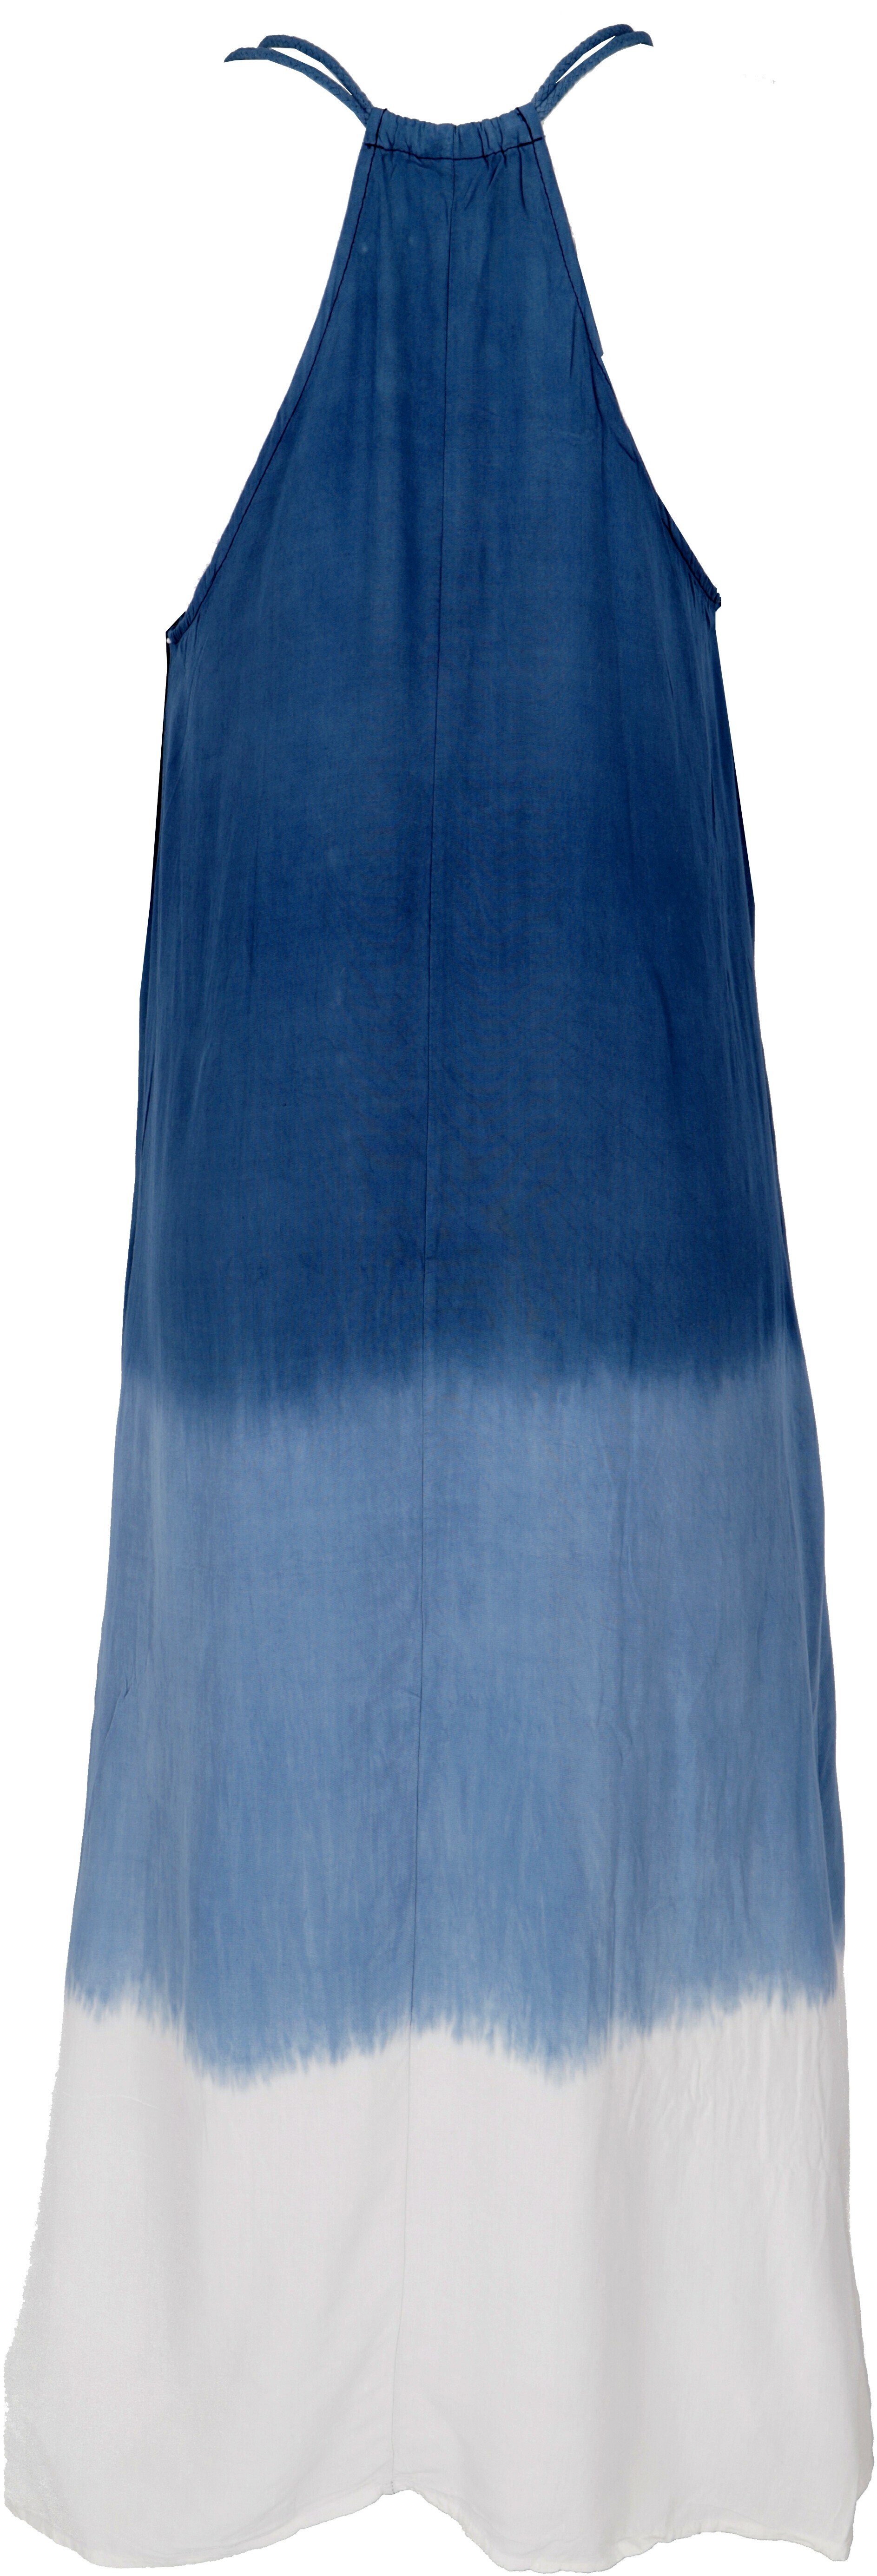 -.. Schmales Bekleidung blau/weiß alternative Batikkleid, Sommerkleid Strandkleid, Midikleid Guru-Shop